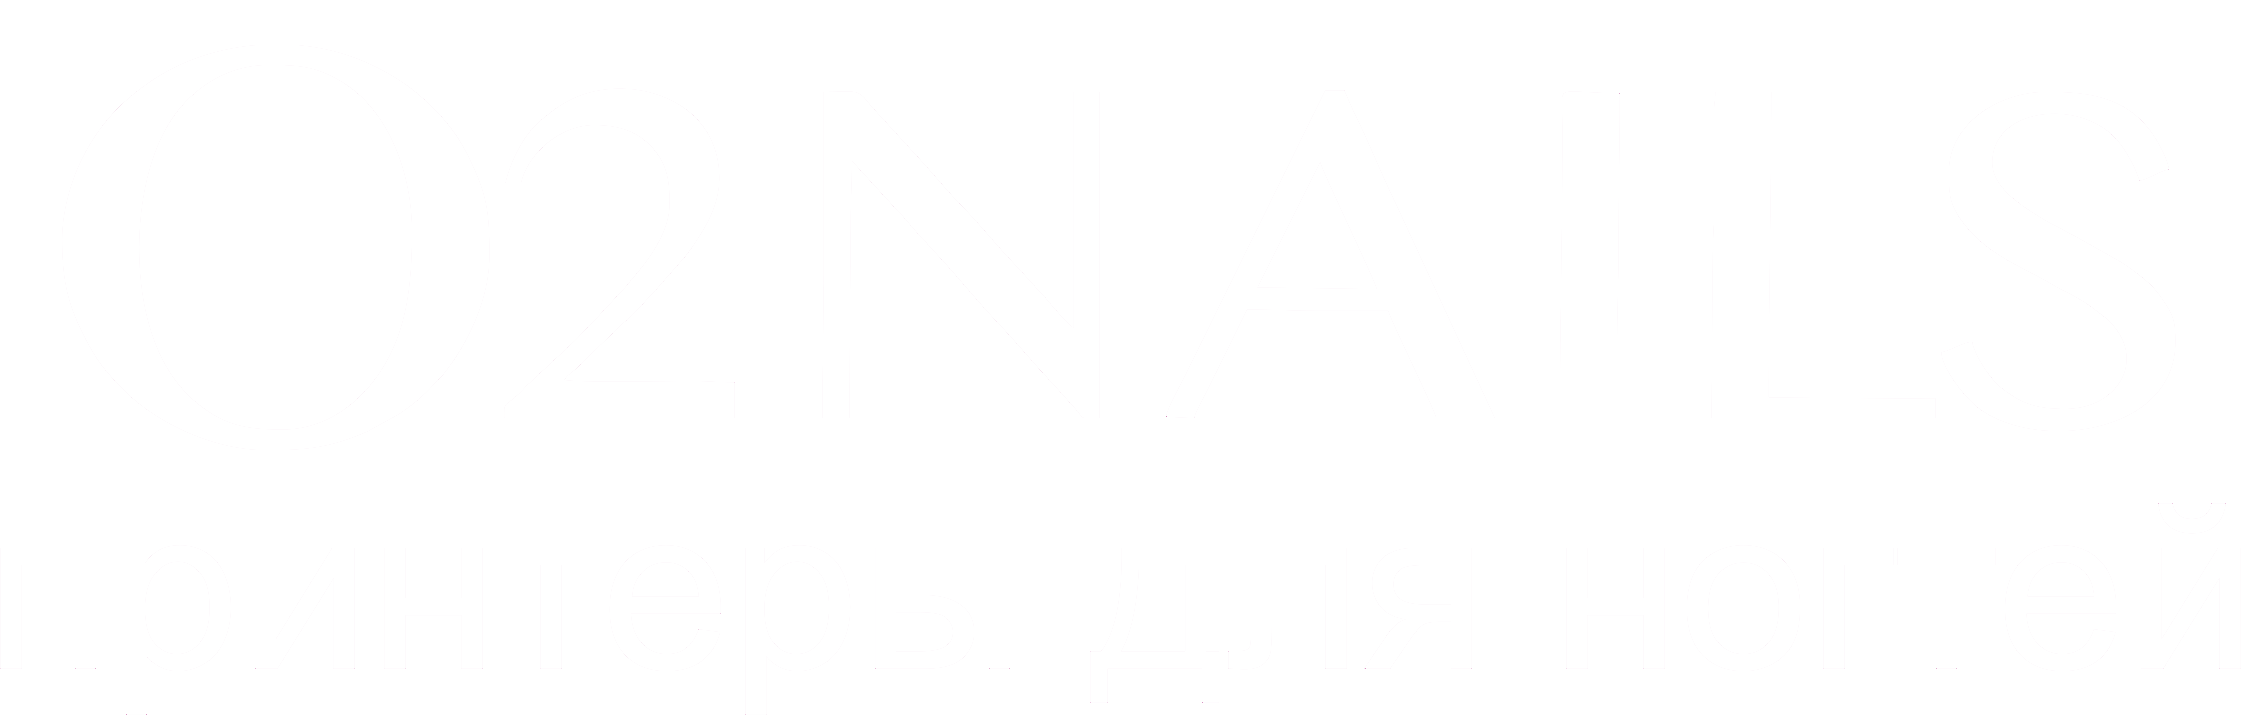 Принтеры для ногтей O2Nails - эксклюзивный дистрибьютор по России и СНГ, бесплатная доставка